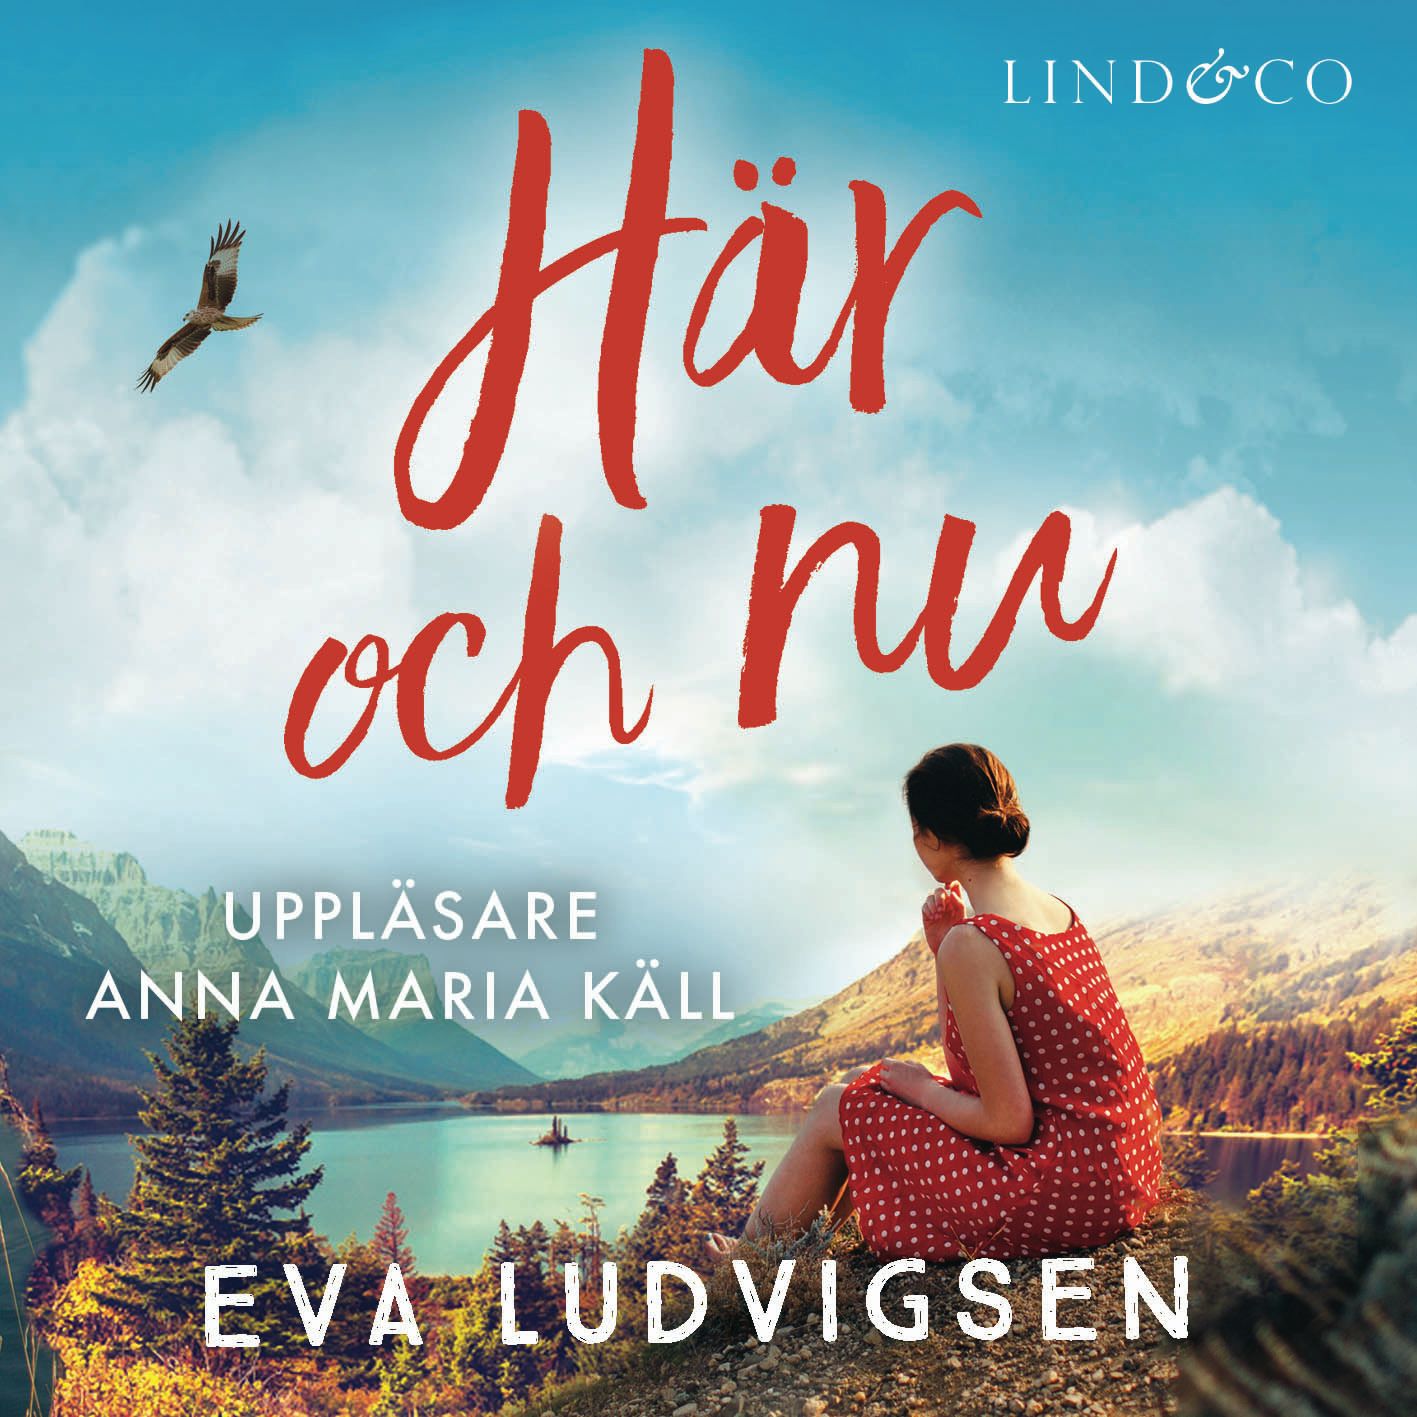 Här och nu, ljudbok av Eva Ludvigsen